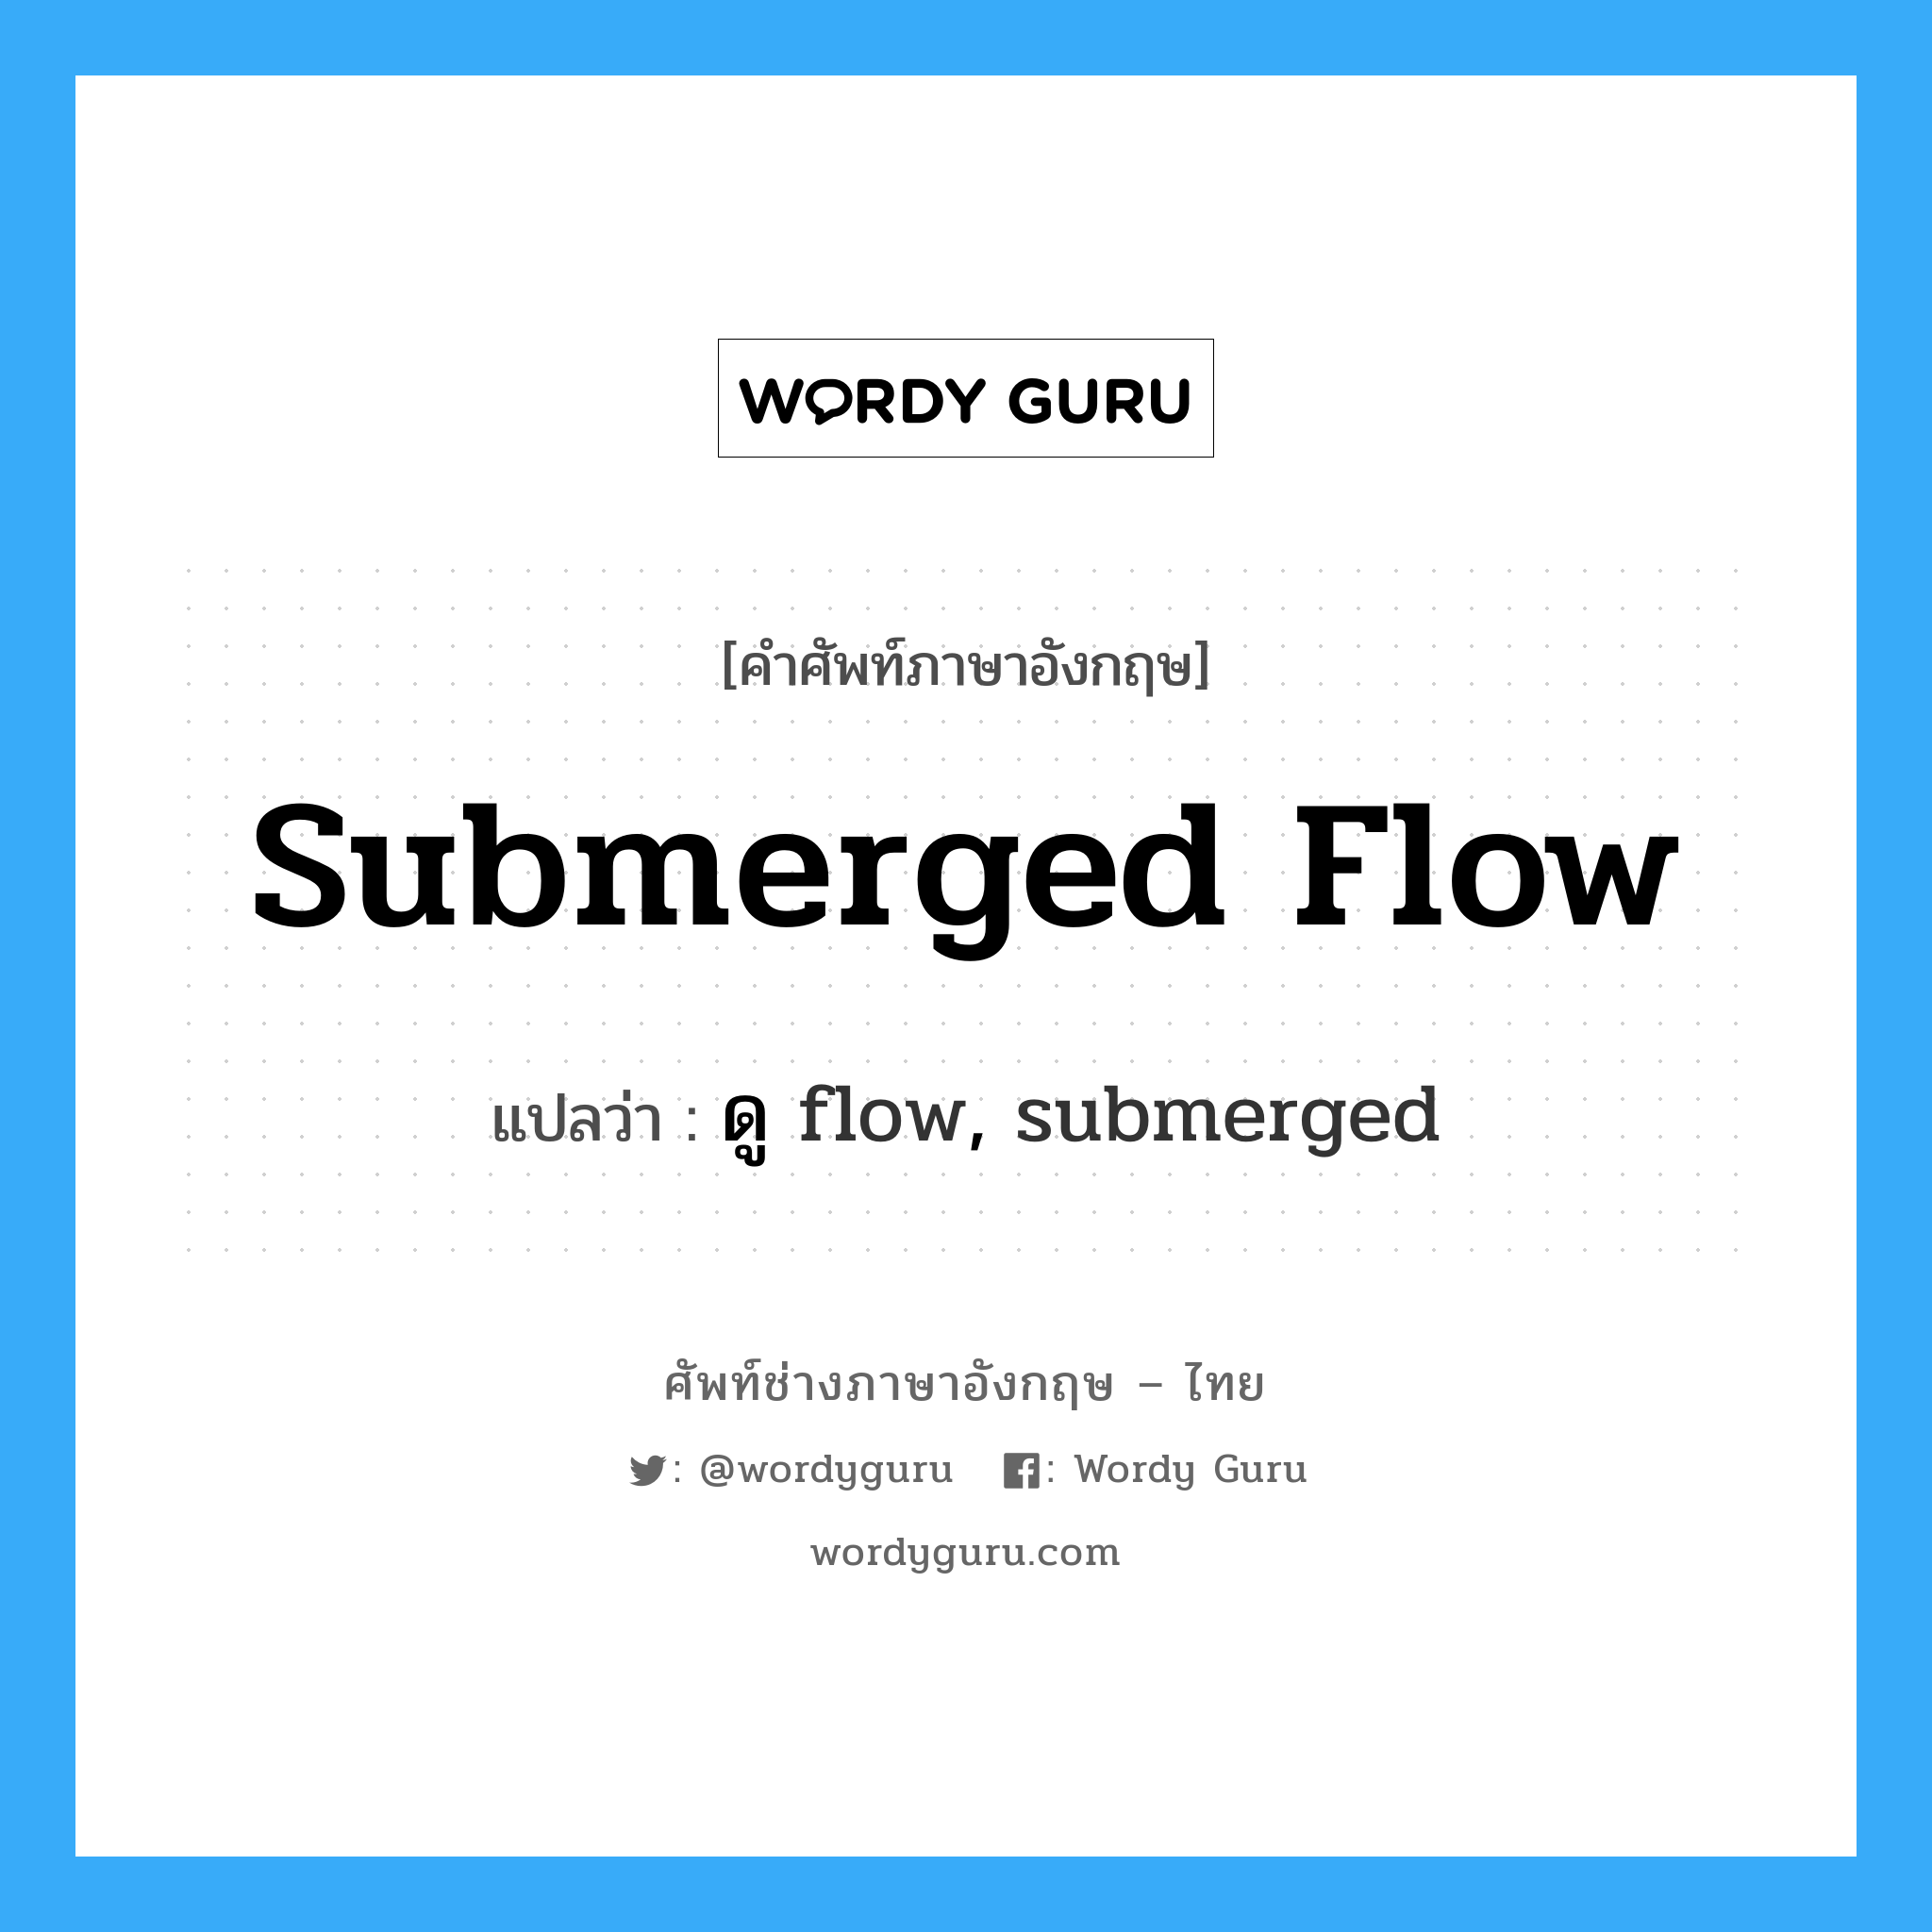 ดู flow, submerged ภาษาอังกฤษ?, คำศัพท์ช่างภาษาอังกฤษ - ไทย ดู flow, submerged คำศัพท์ภาษาอังกฤษ ดู flow, submerged แปลว่า submerged flow